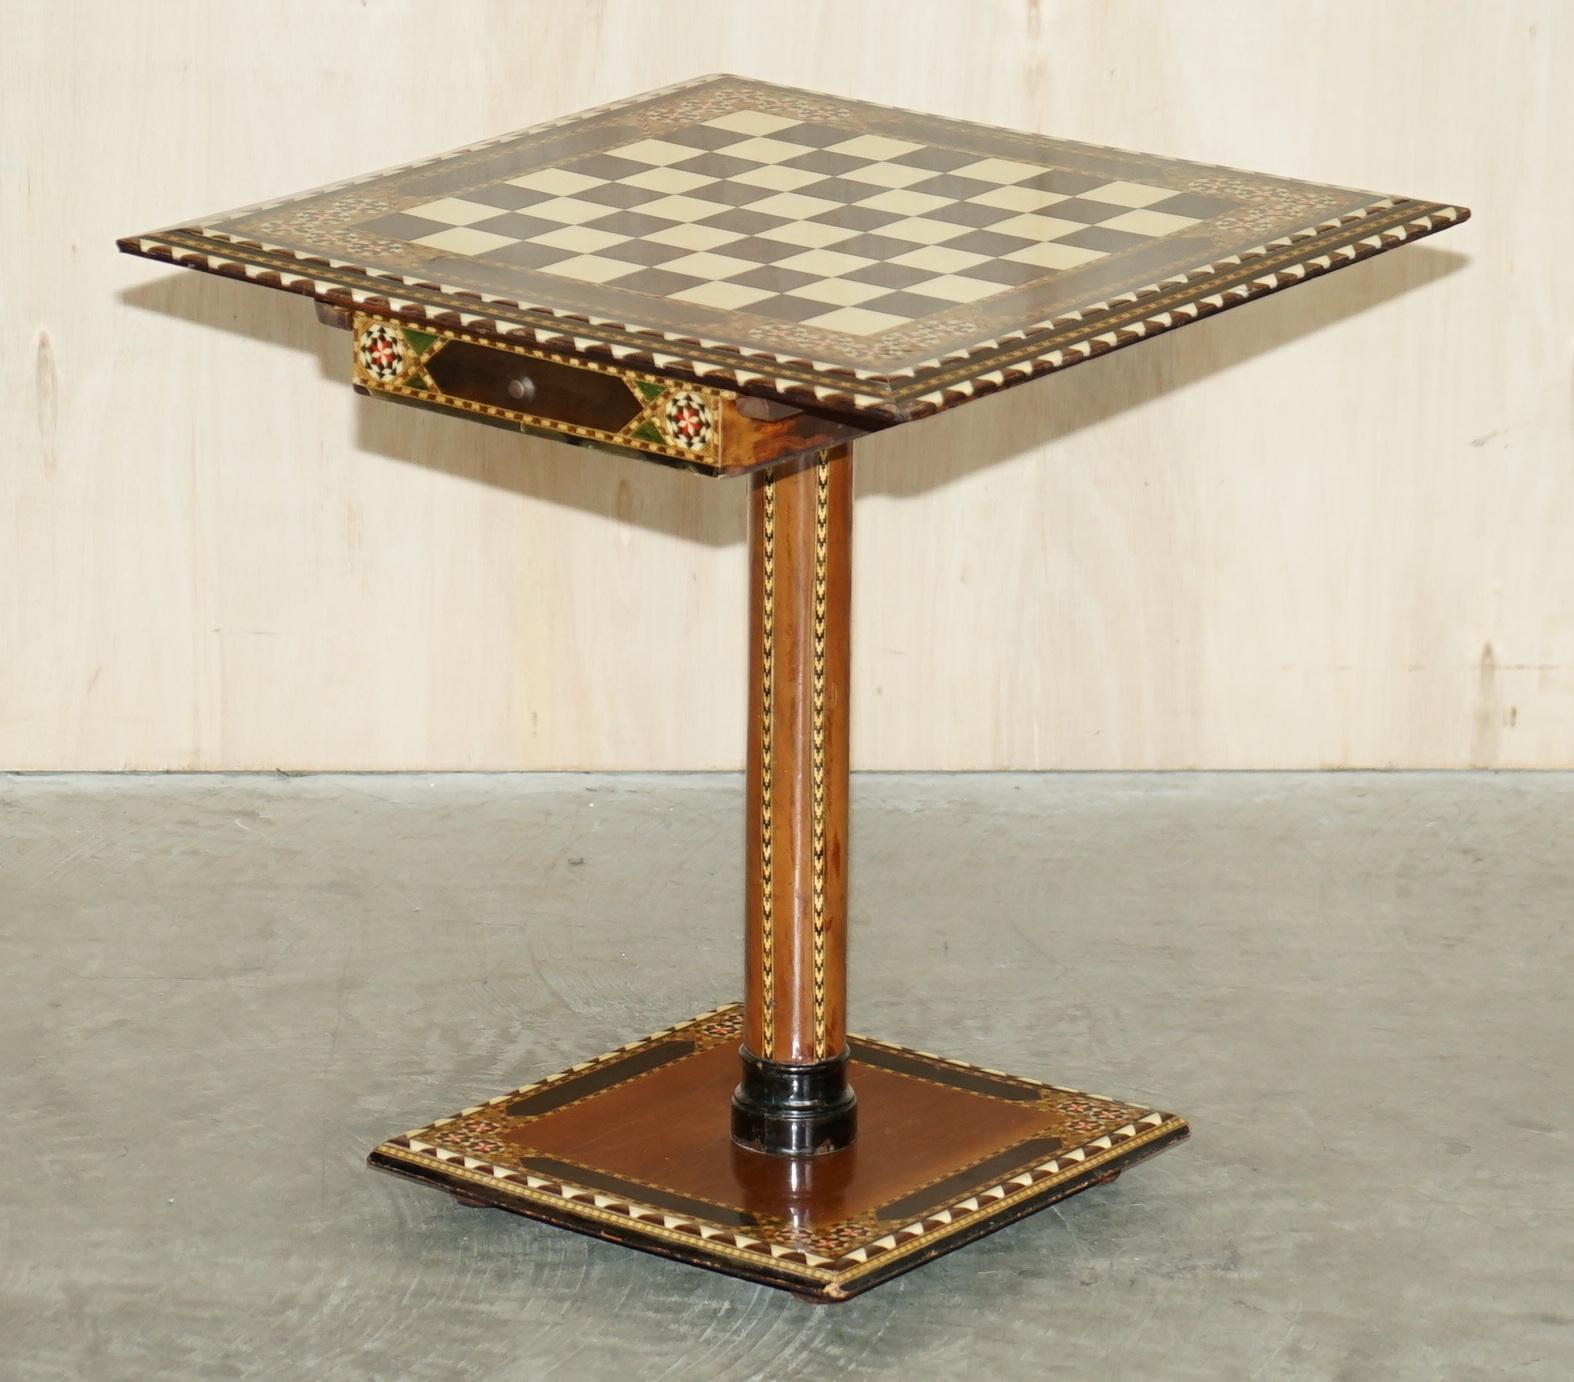 Nous sommes ravis d'offrir à la vente cette exquise table de jeux d'échecs anglo-indienne

Pièce très bien faite et décorative, cette table est de style Régence, fabriquée pendant l'occupation anglaise de l'Inde pour le marché de